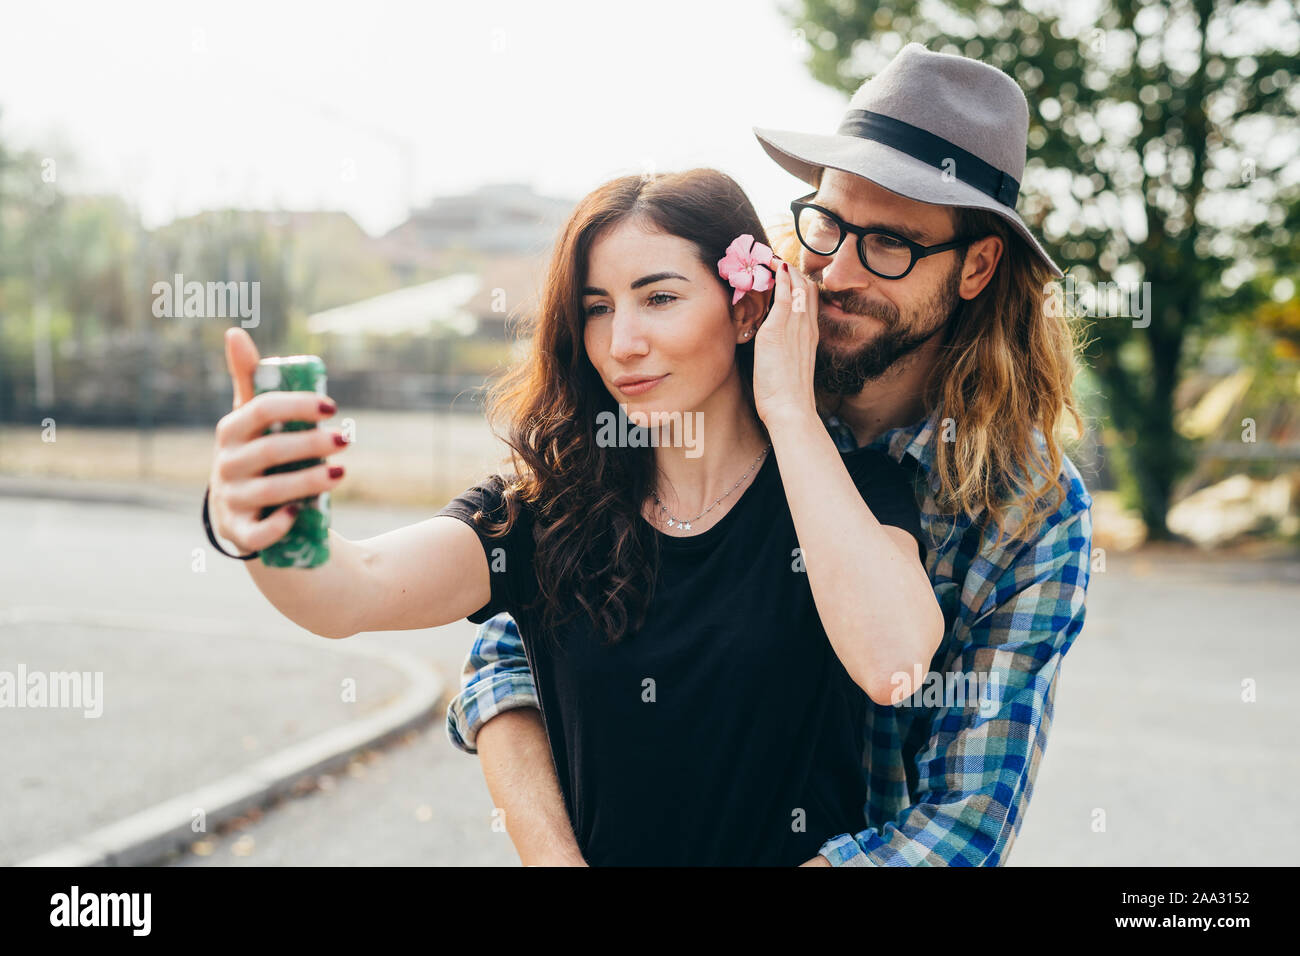 Hermosa joven pareja feliz caminar teniendo selfie exterior utilizando smartphones - tecnología, screentime, freetime concepto Foto de stock